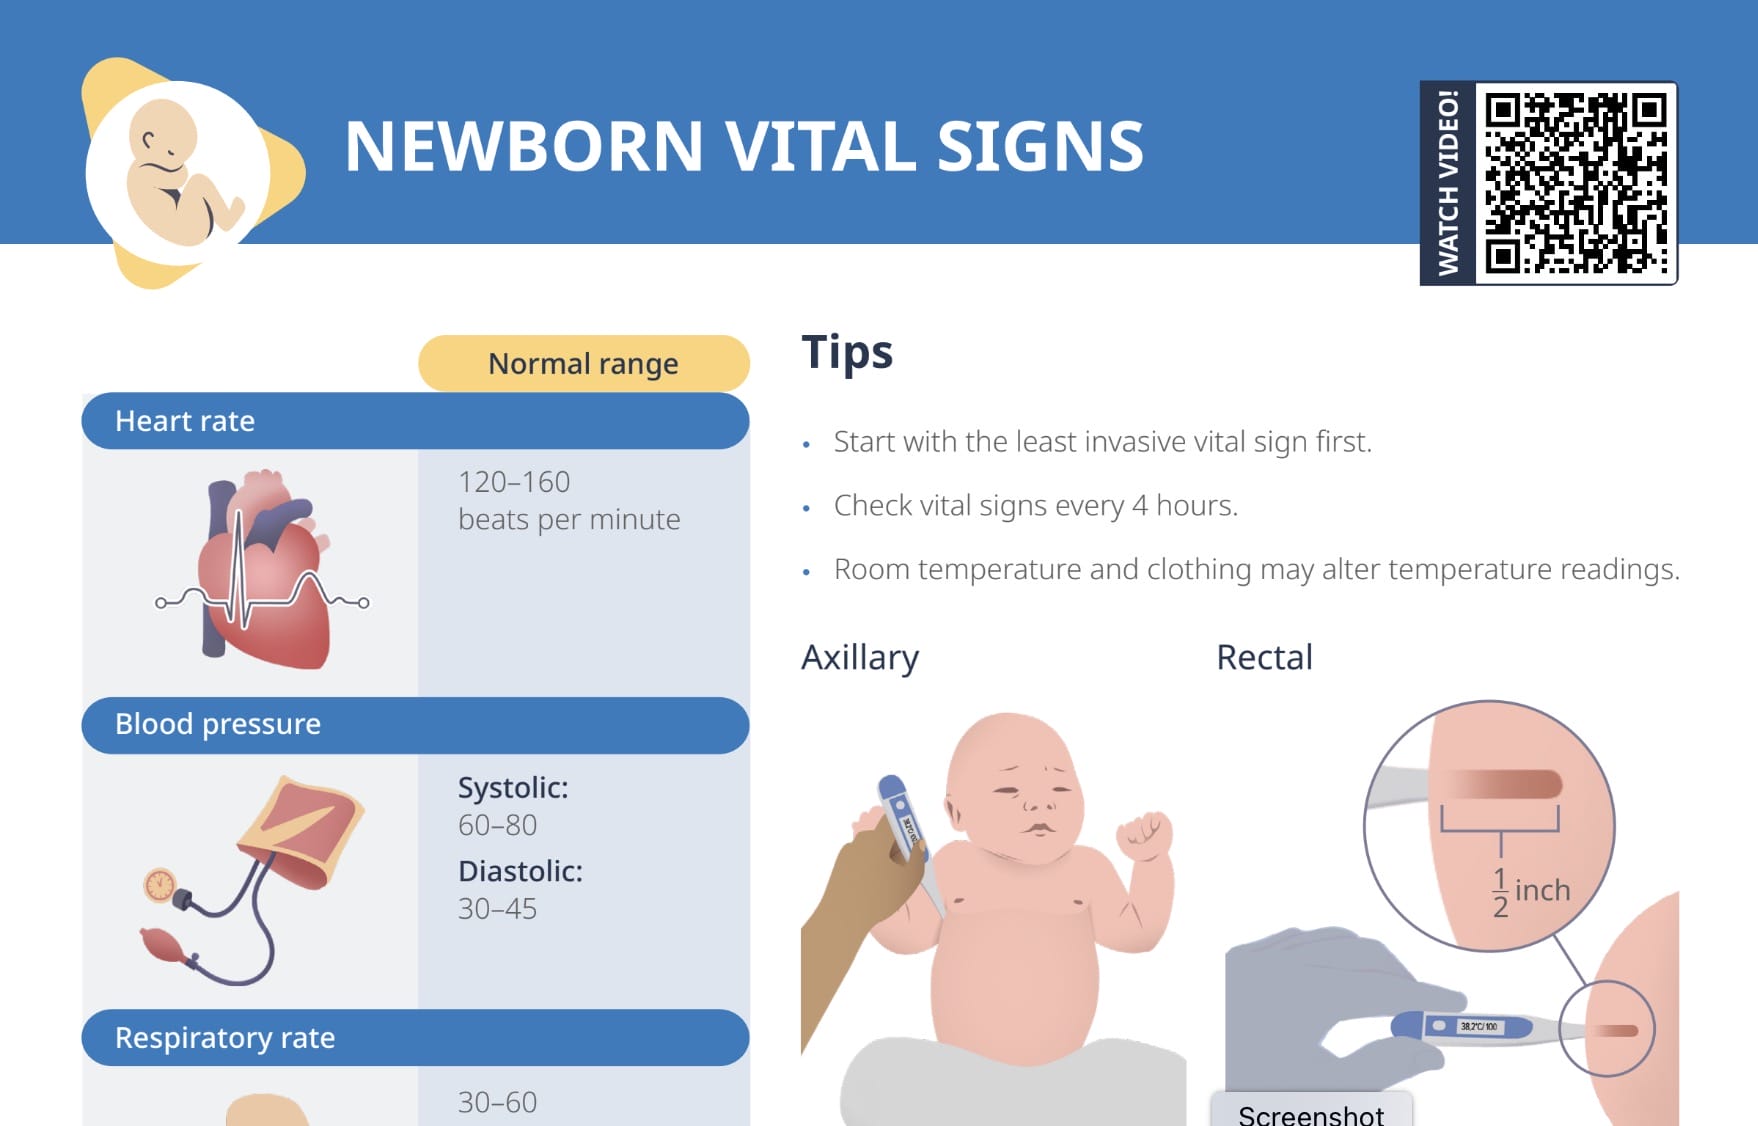 Newborn vital signs